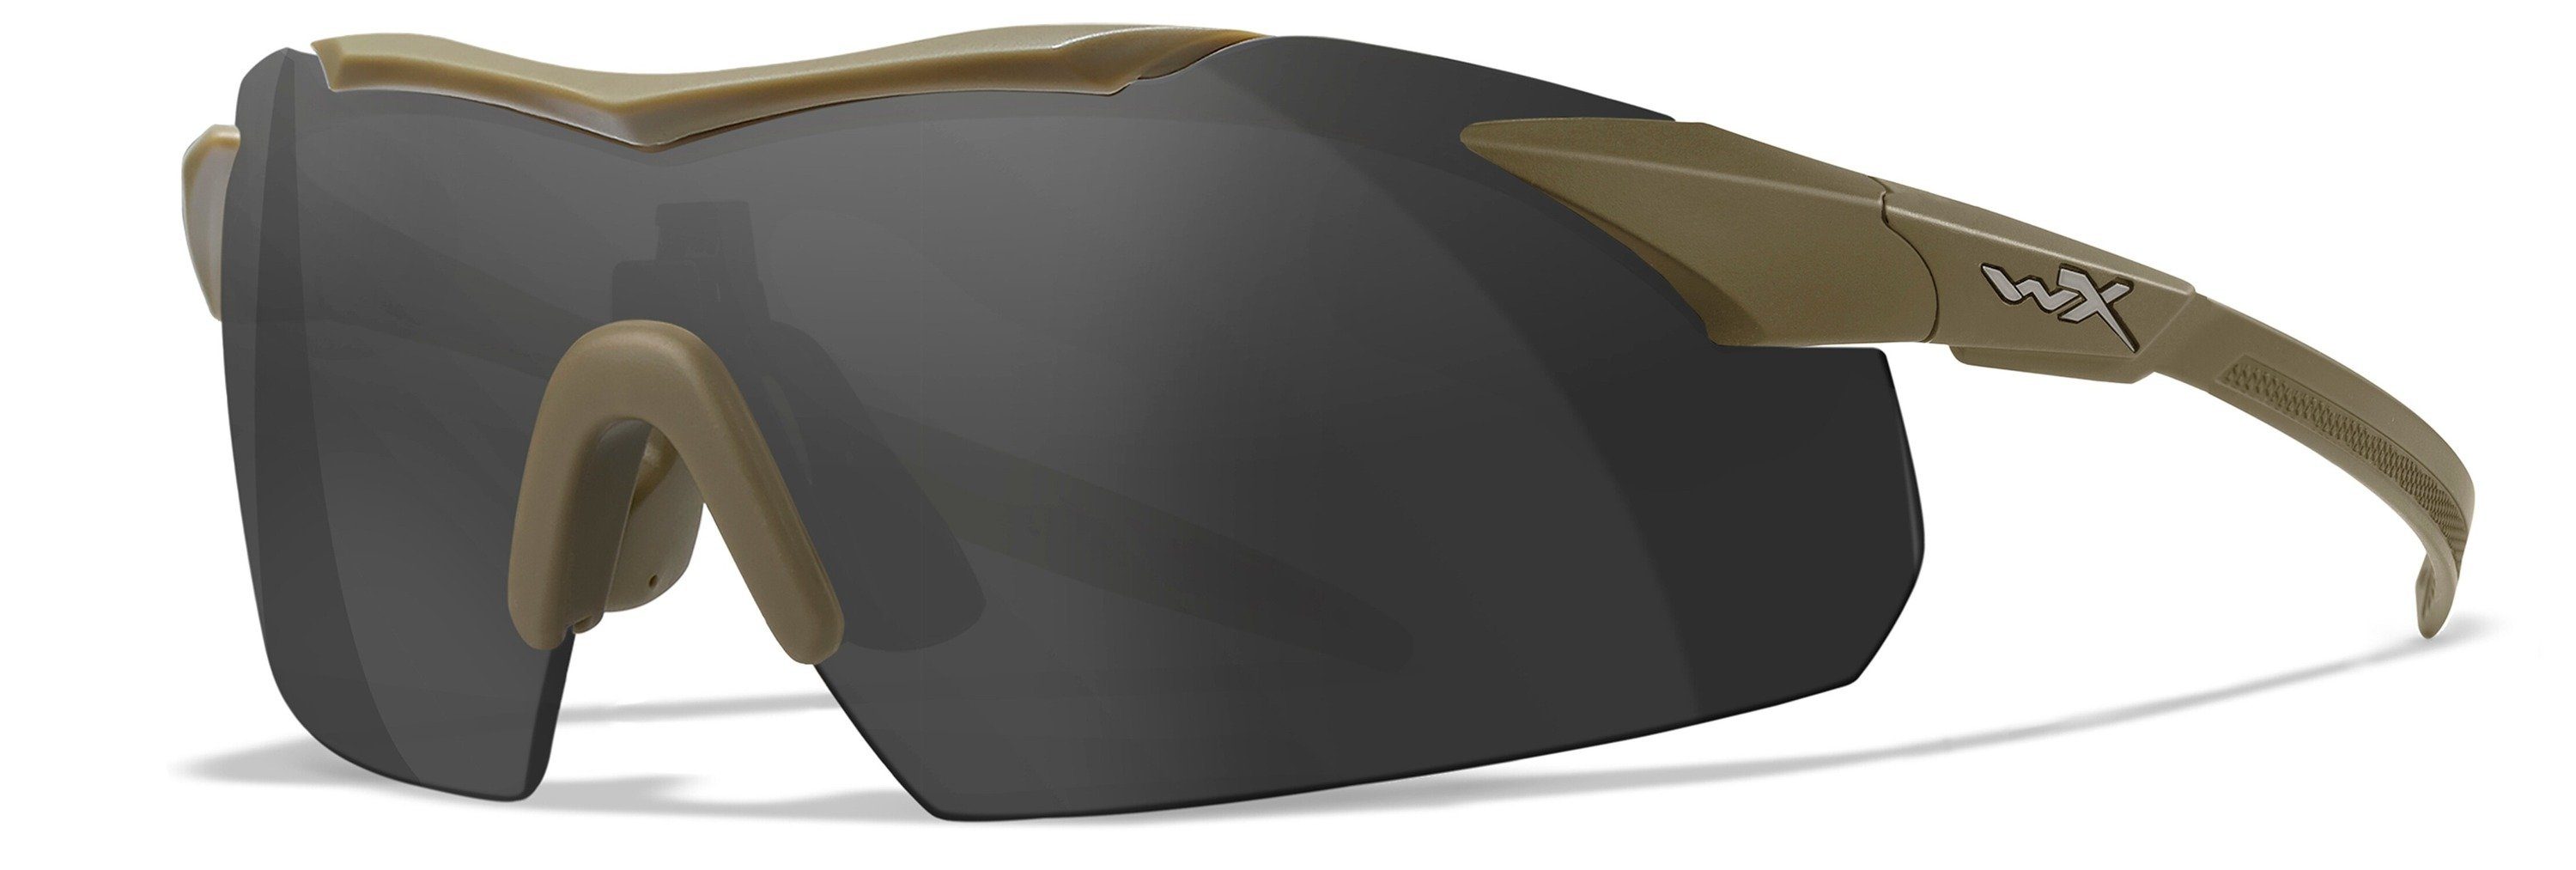 Wiley X Sonnenbrille Set Tarnfarbe Brille 2.5 VAPOR WX Matt